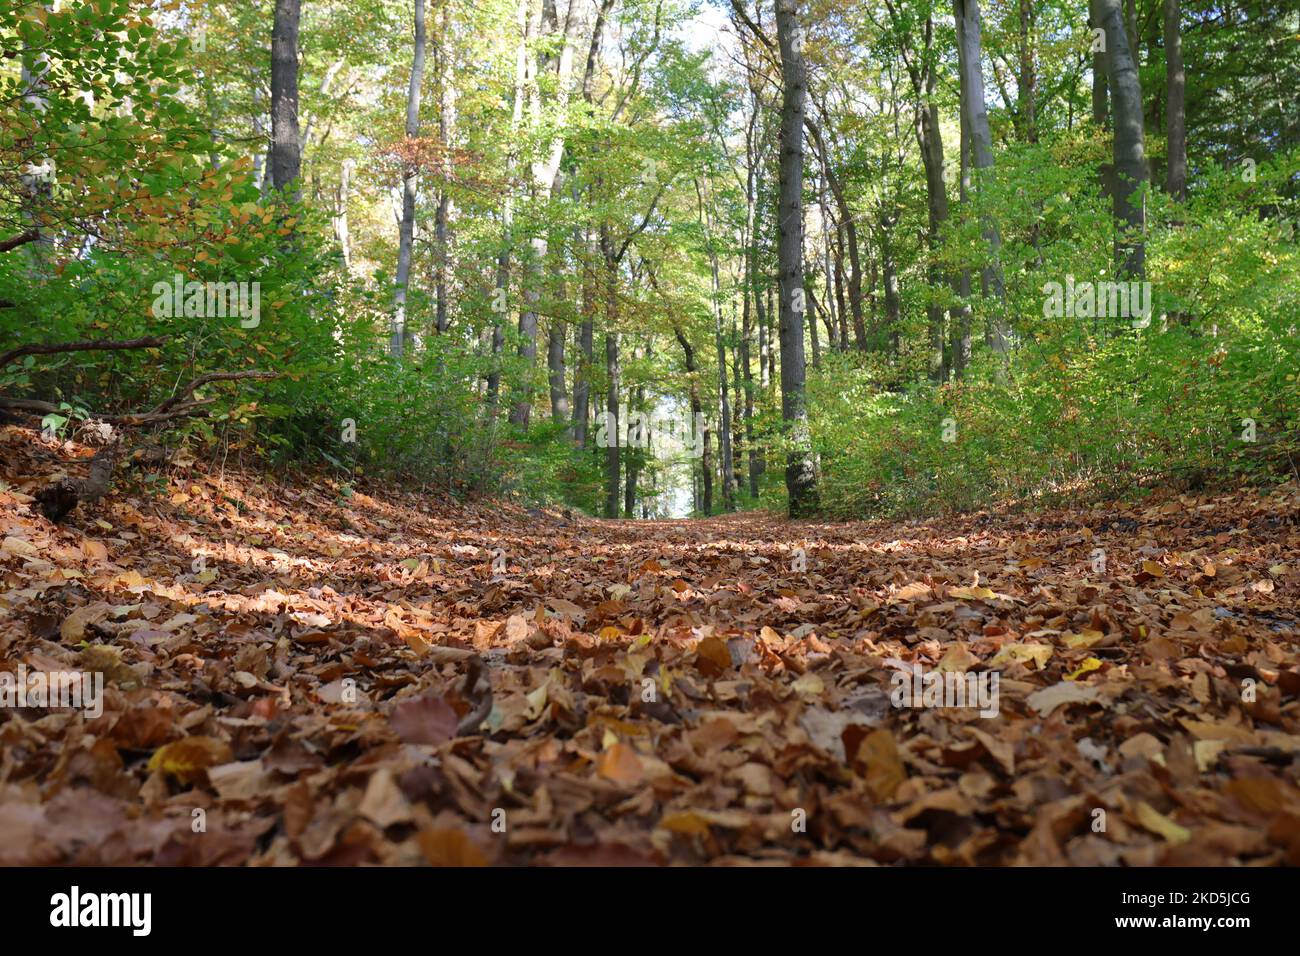 Des feuilles d'automne brunes couvrent abondamment le sol d'un sentier forestier devant des arbres encore verts en arrière-plan Banque D'Images